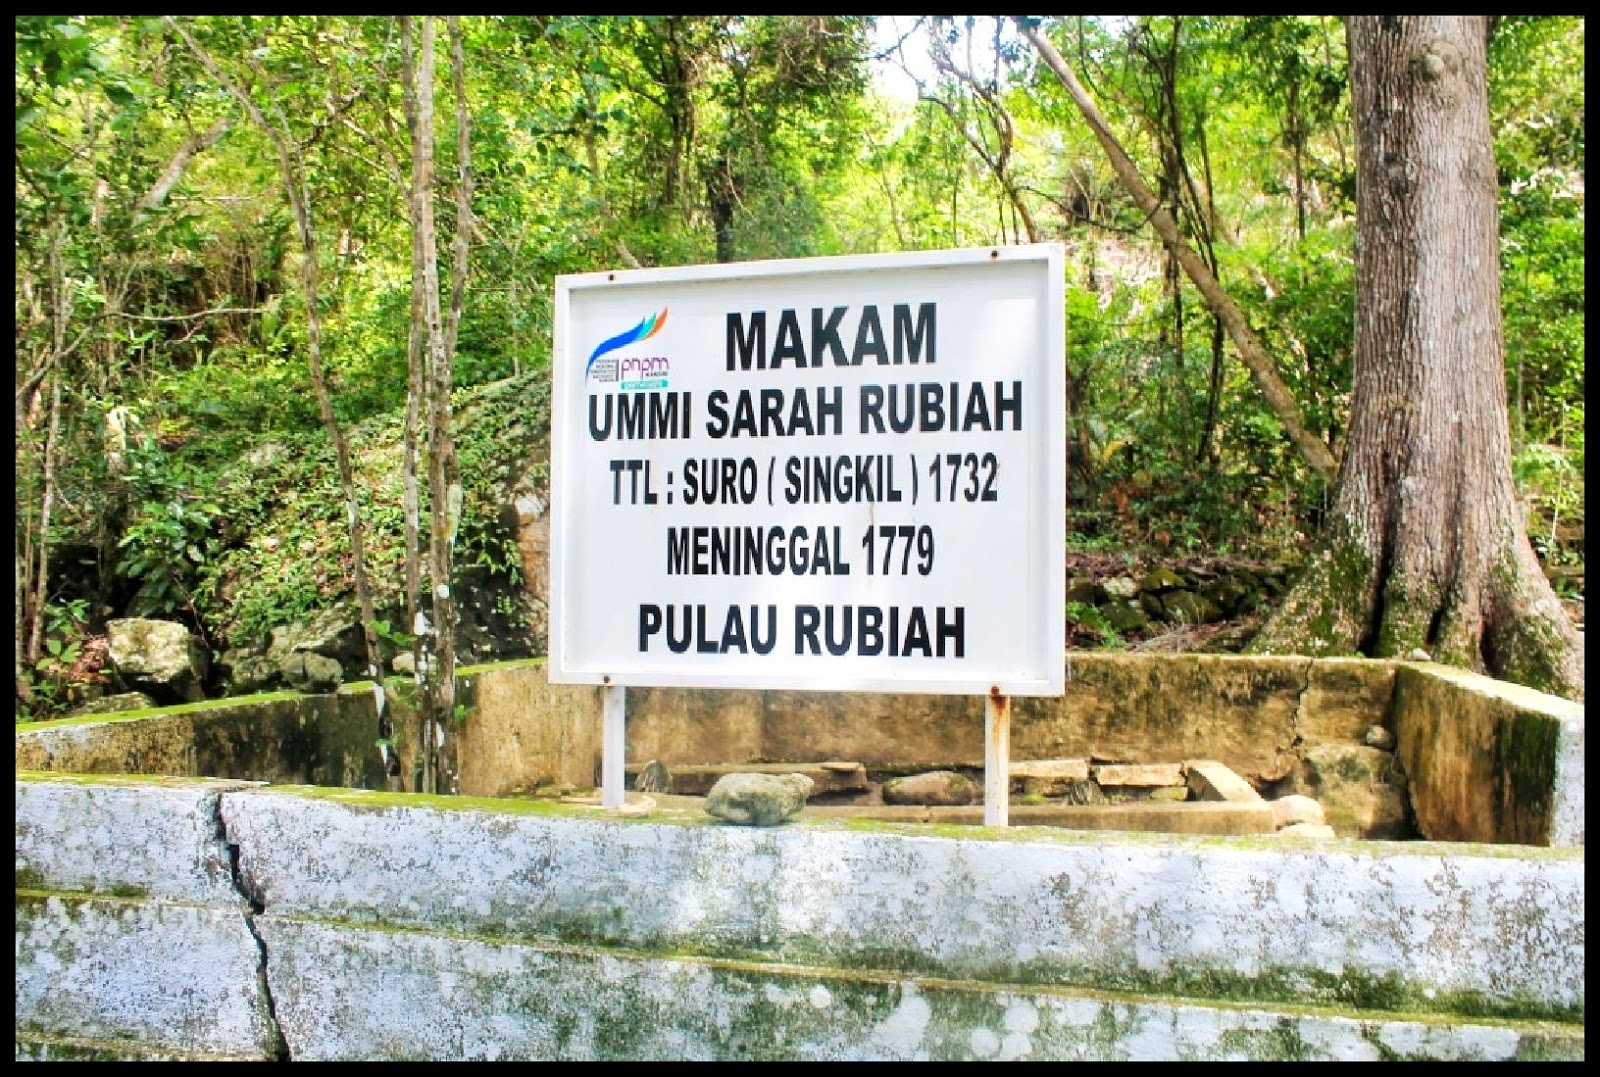 Makam Ummi Sarah Rubiah | travellinkinfo.com